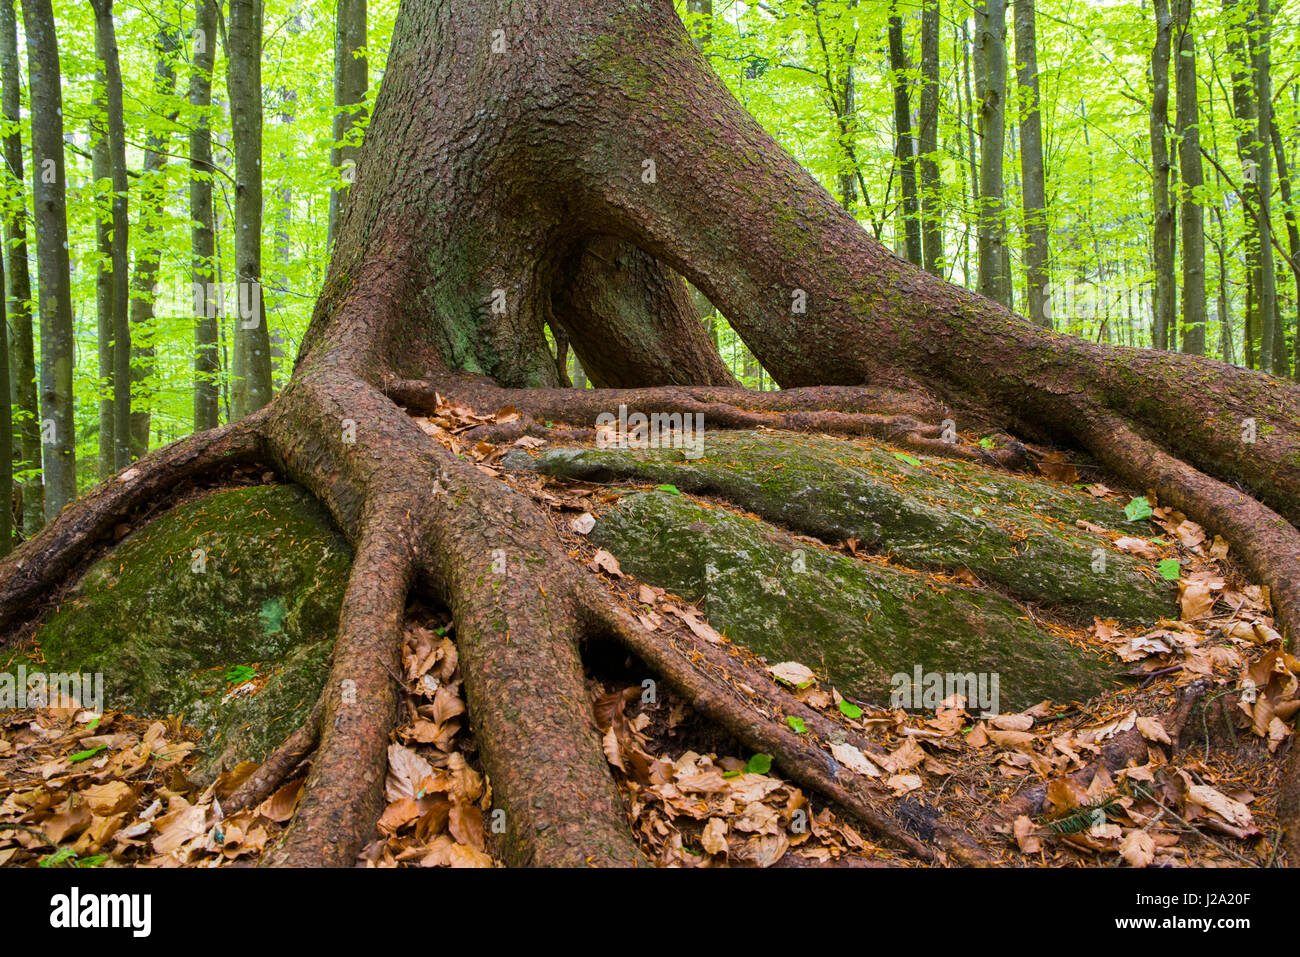 Forêt vierge dans le Parc National de la forêt bavaroise en Allemagne avec un sprucetree avec racines échasses Banque D'Images